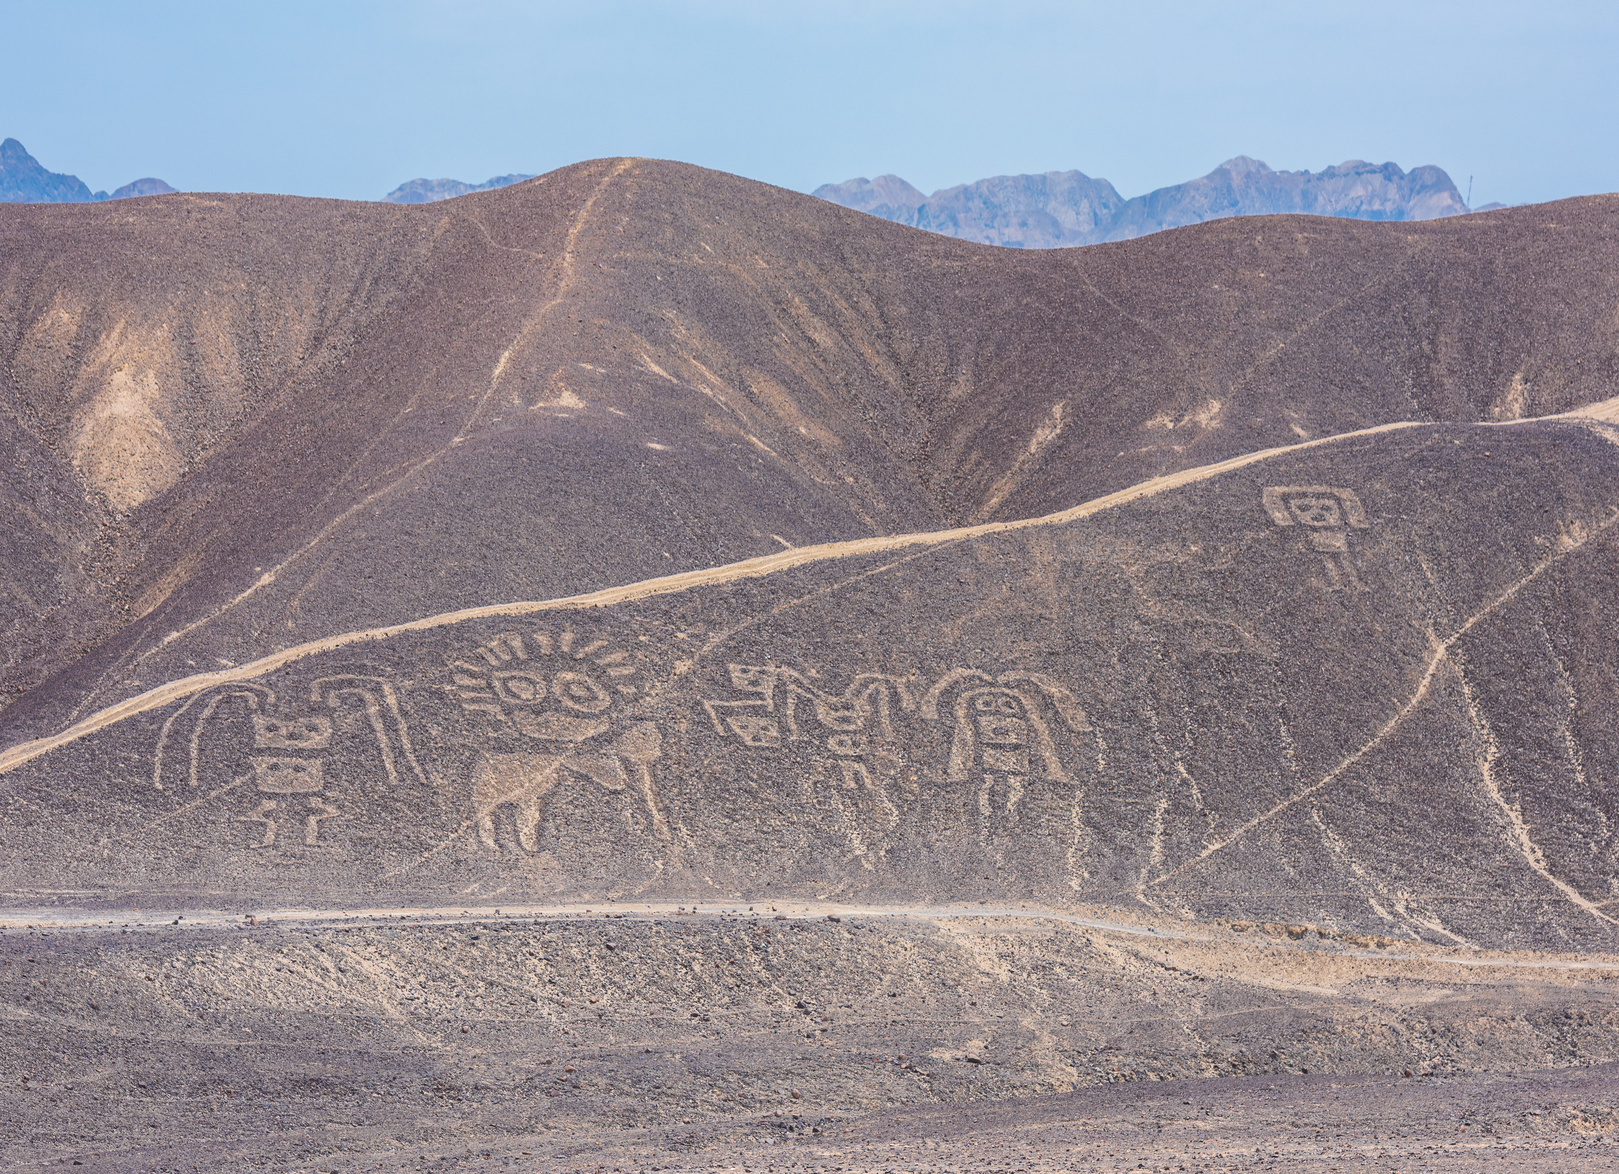 Géoglyphes sur les collines à Palpa, au Pérou. © javarman, fotolia